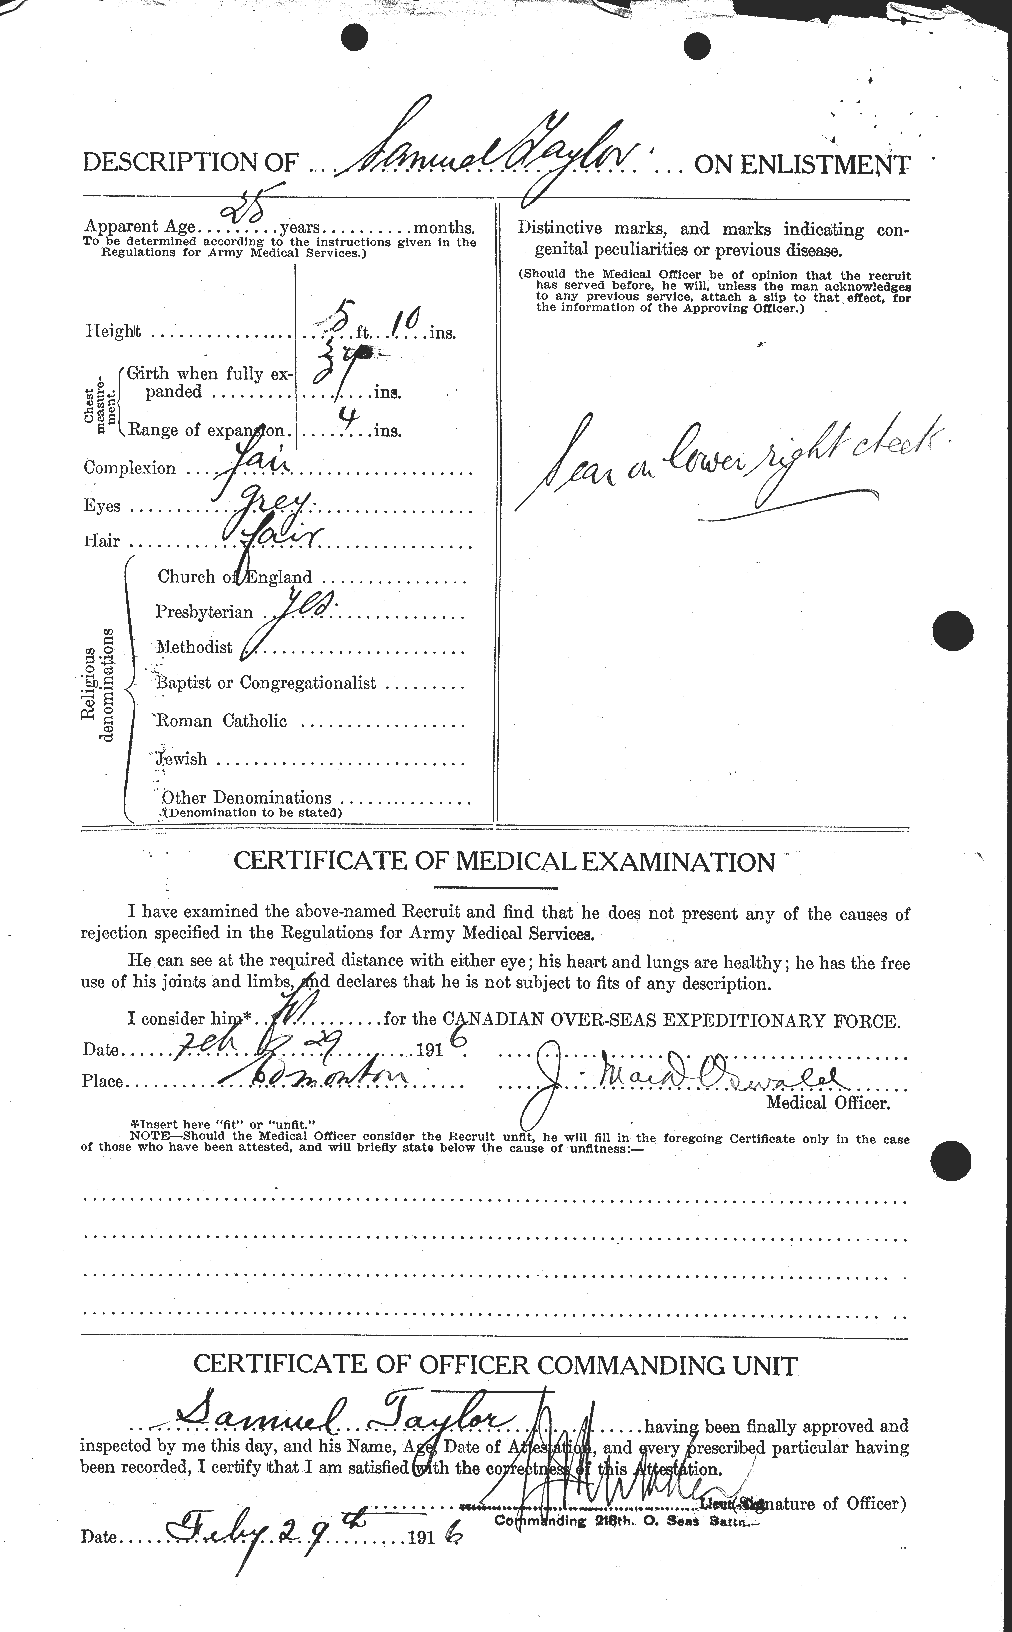 Dossiers du Personnel de la Première Guerre mondiale - CEC 627546b